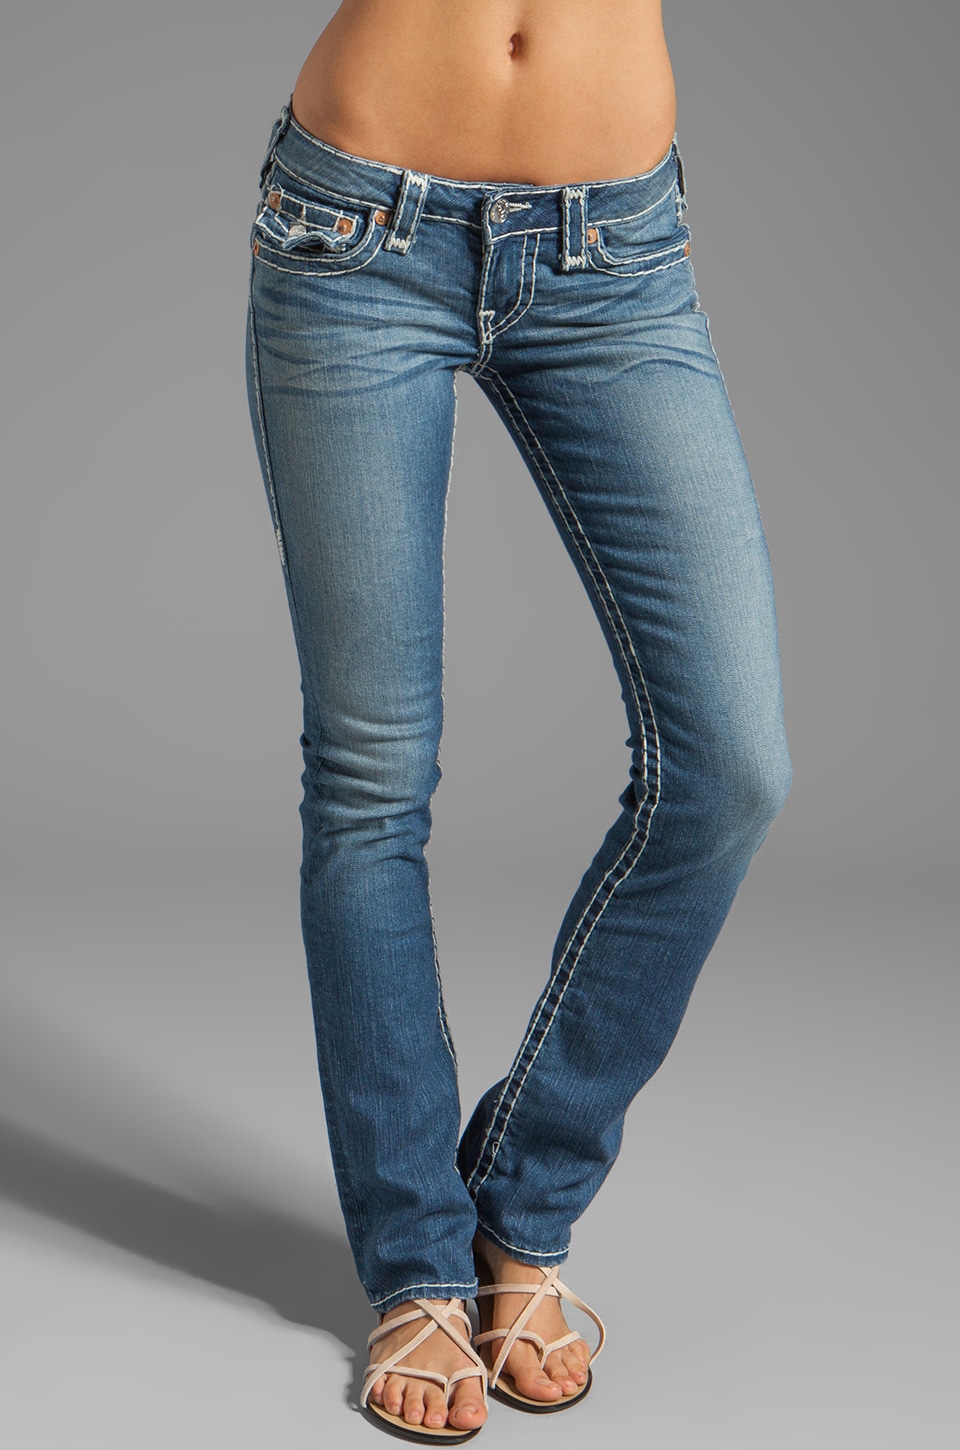 Девушка в джинсах с низкой талией